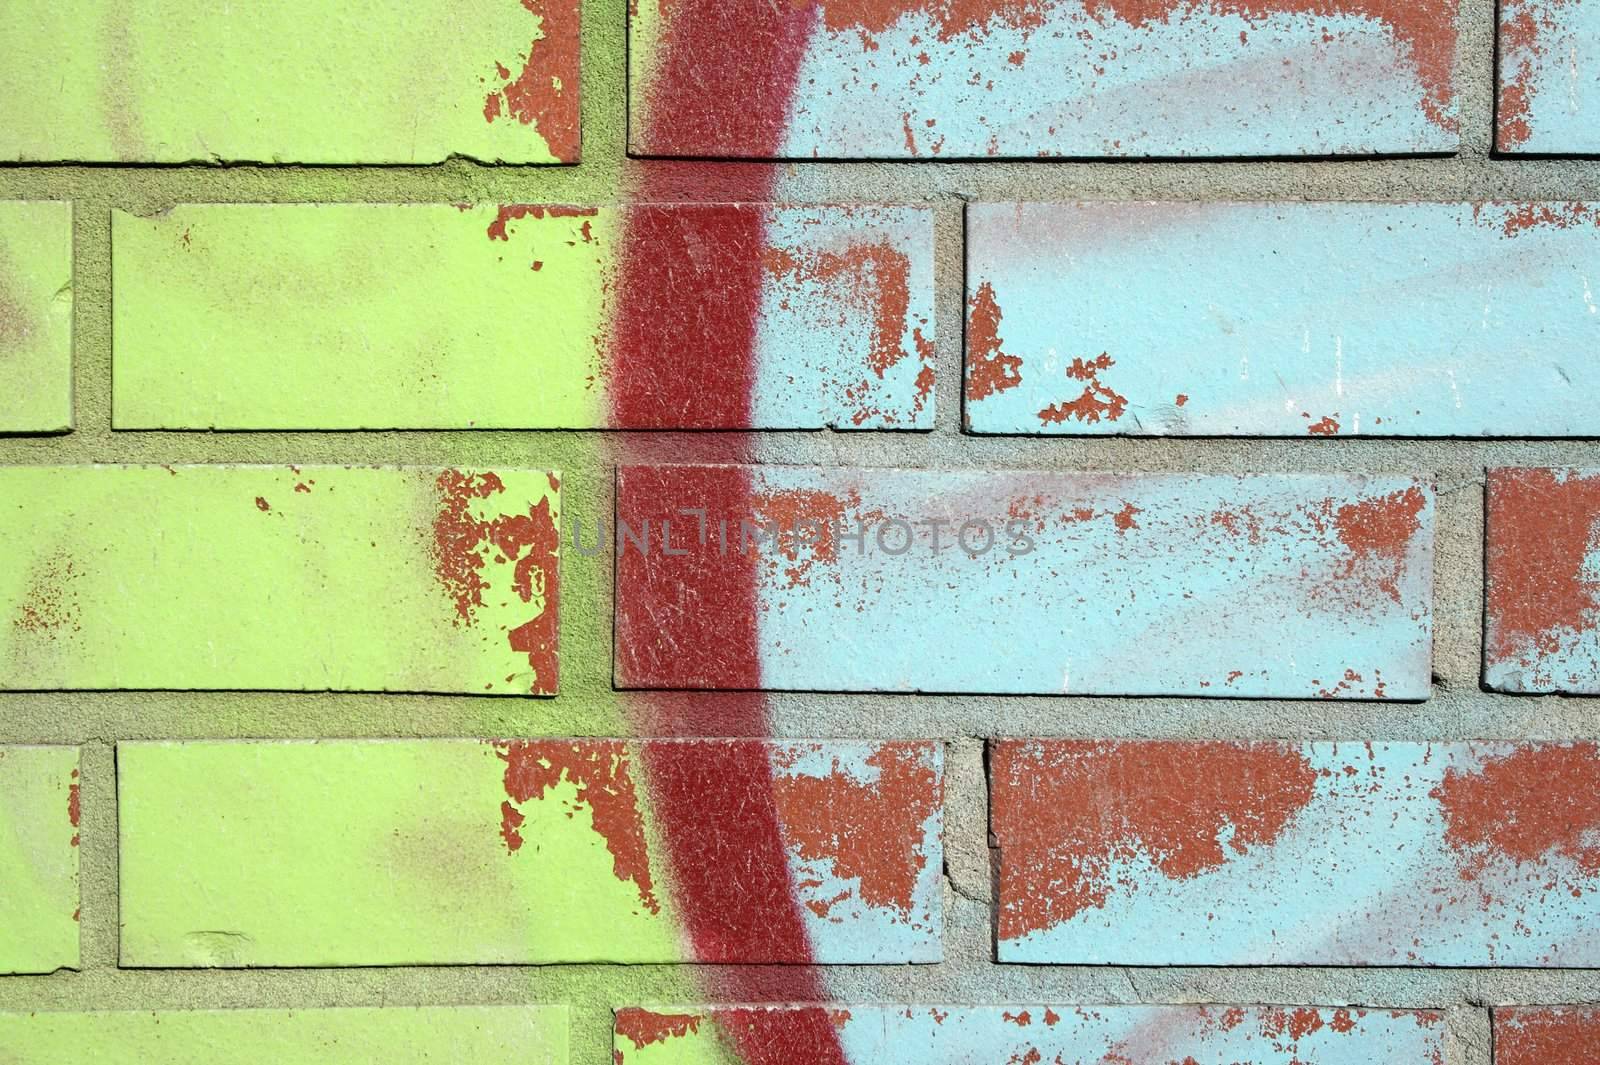 Colorful graffiti on a brick wall by anikasalsera